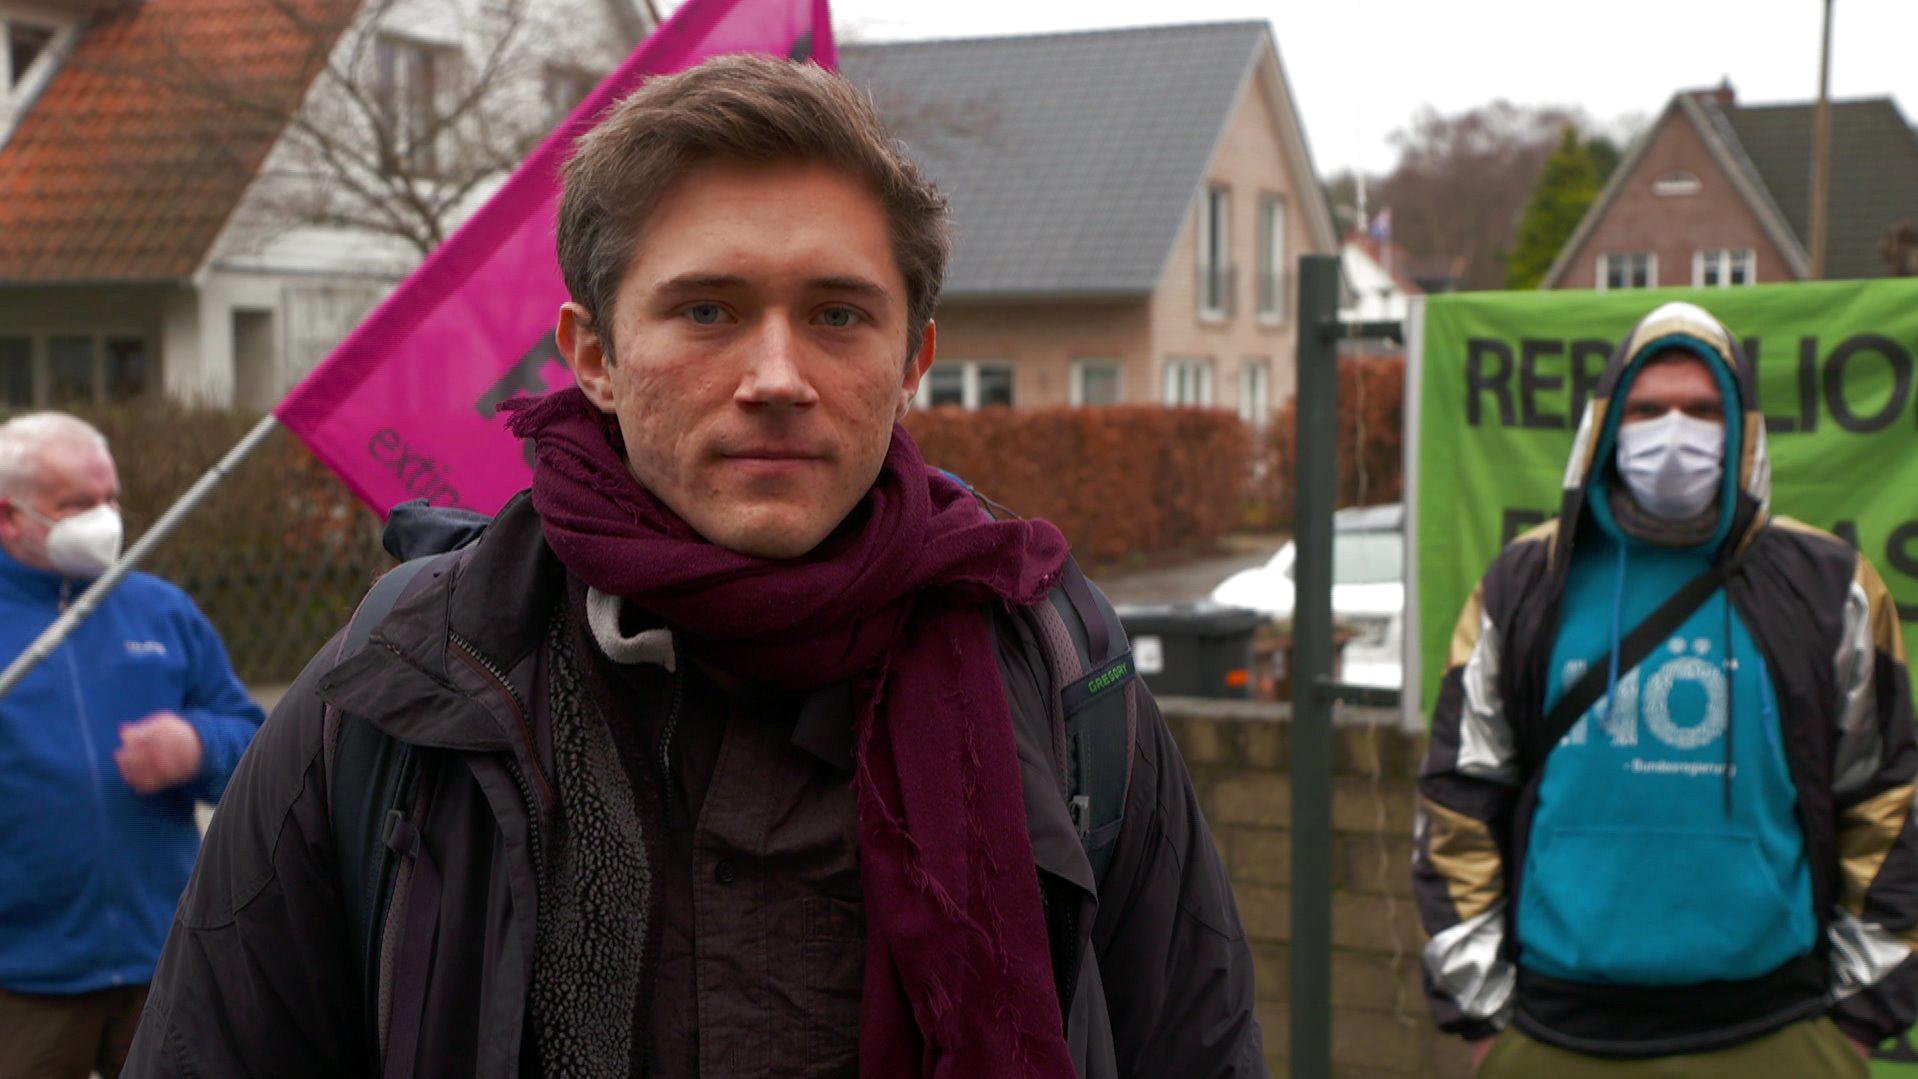 "Ich bin ein wenig traurig darüber, dass das Gericht sich nicht damit befasst hat, dass wir einen Klimanotstand haben", so Aktivist Henning Jeschke nach dem Prozess in Lübeck.